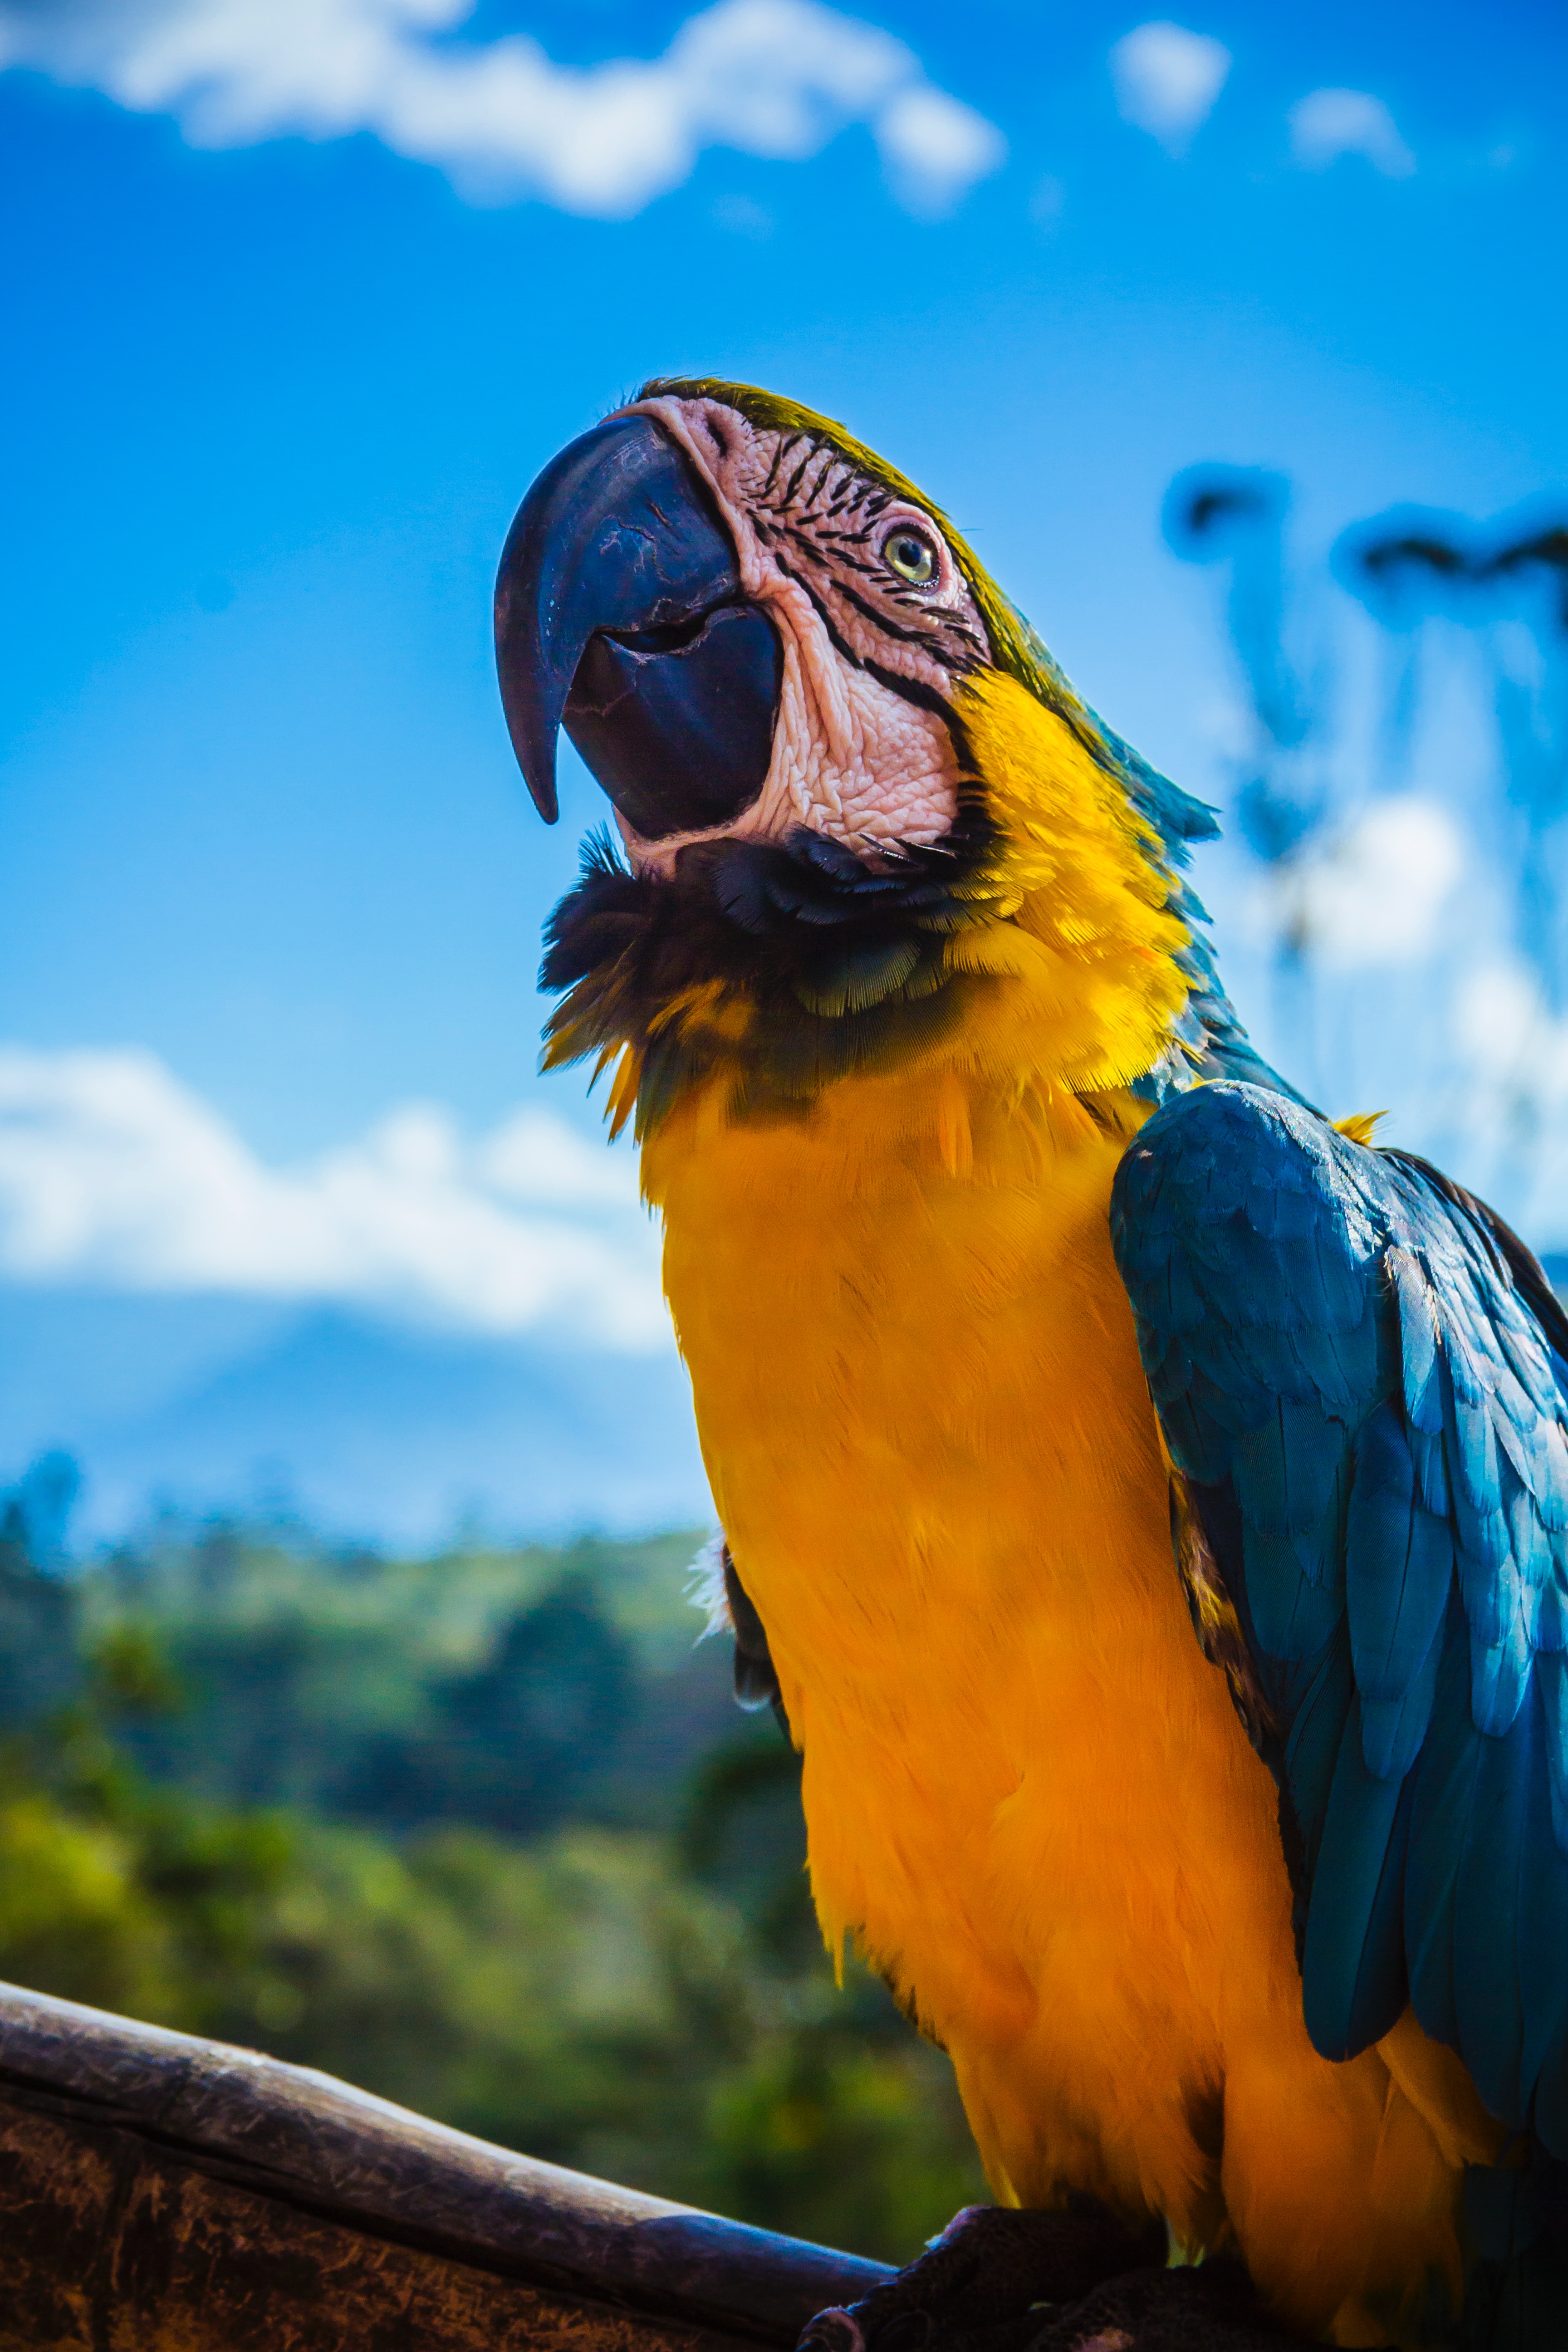 parrots, animals, bird, beak, color, macaw 2160p